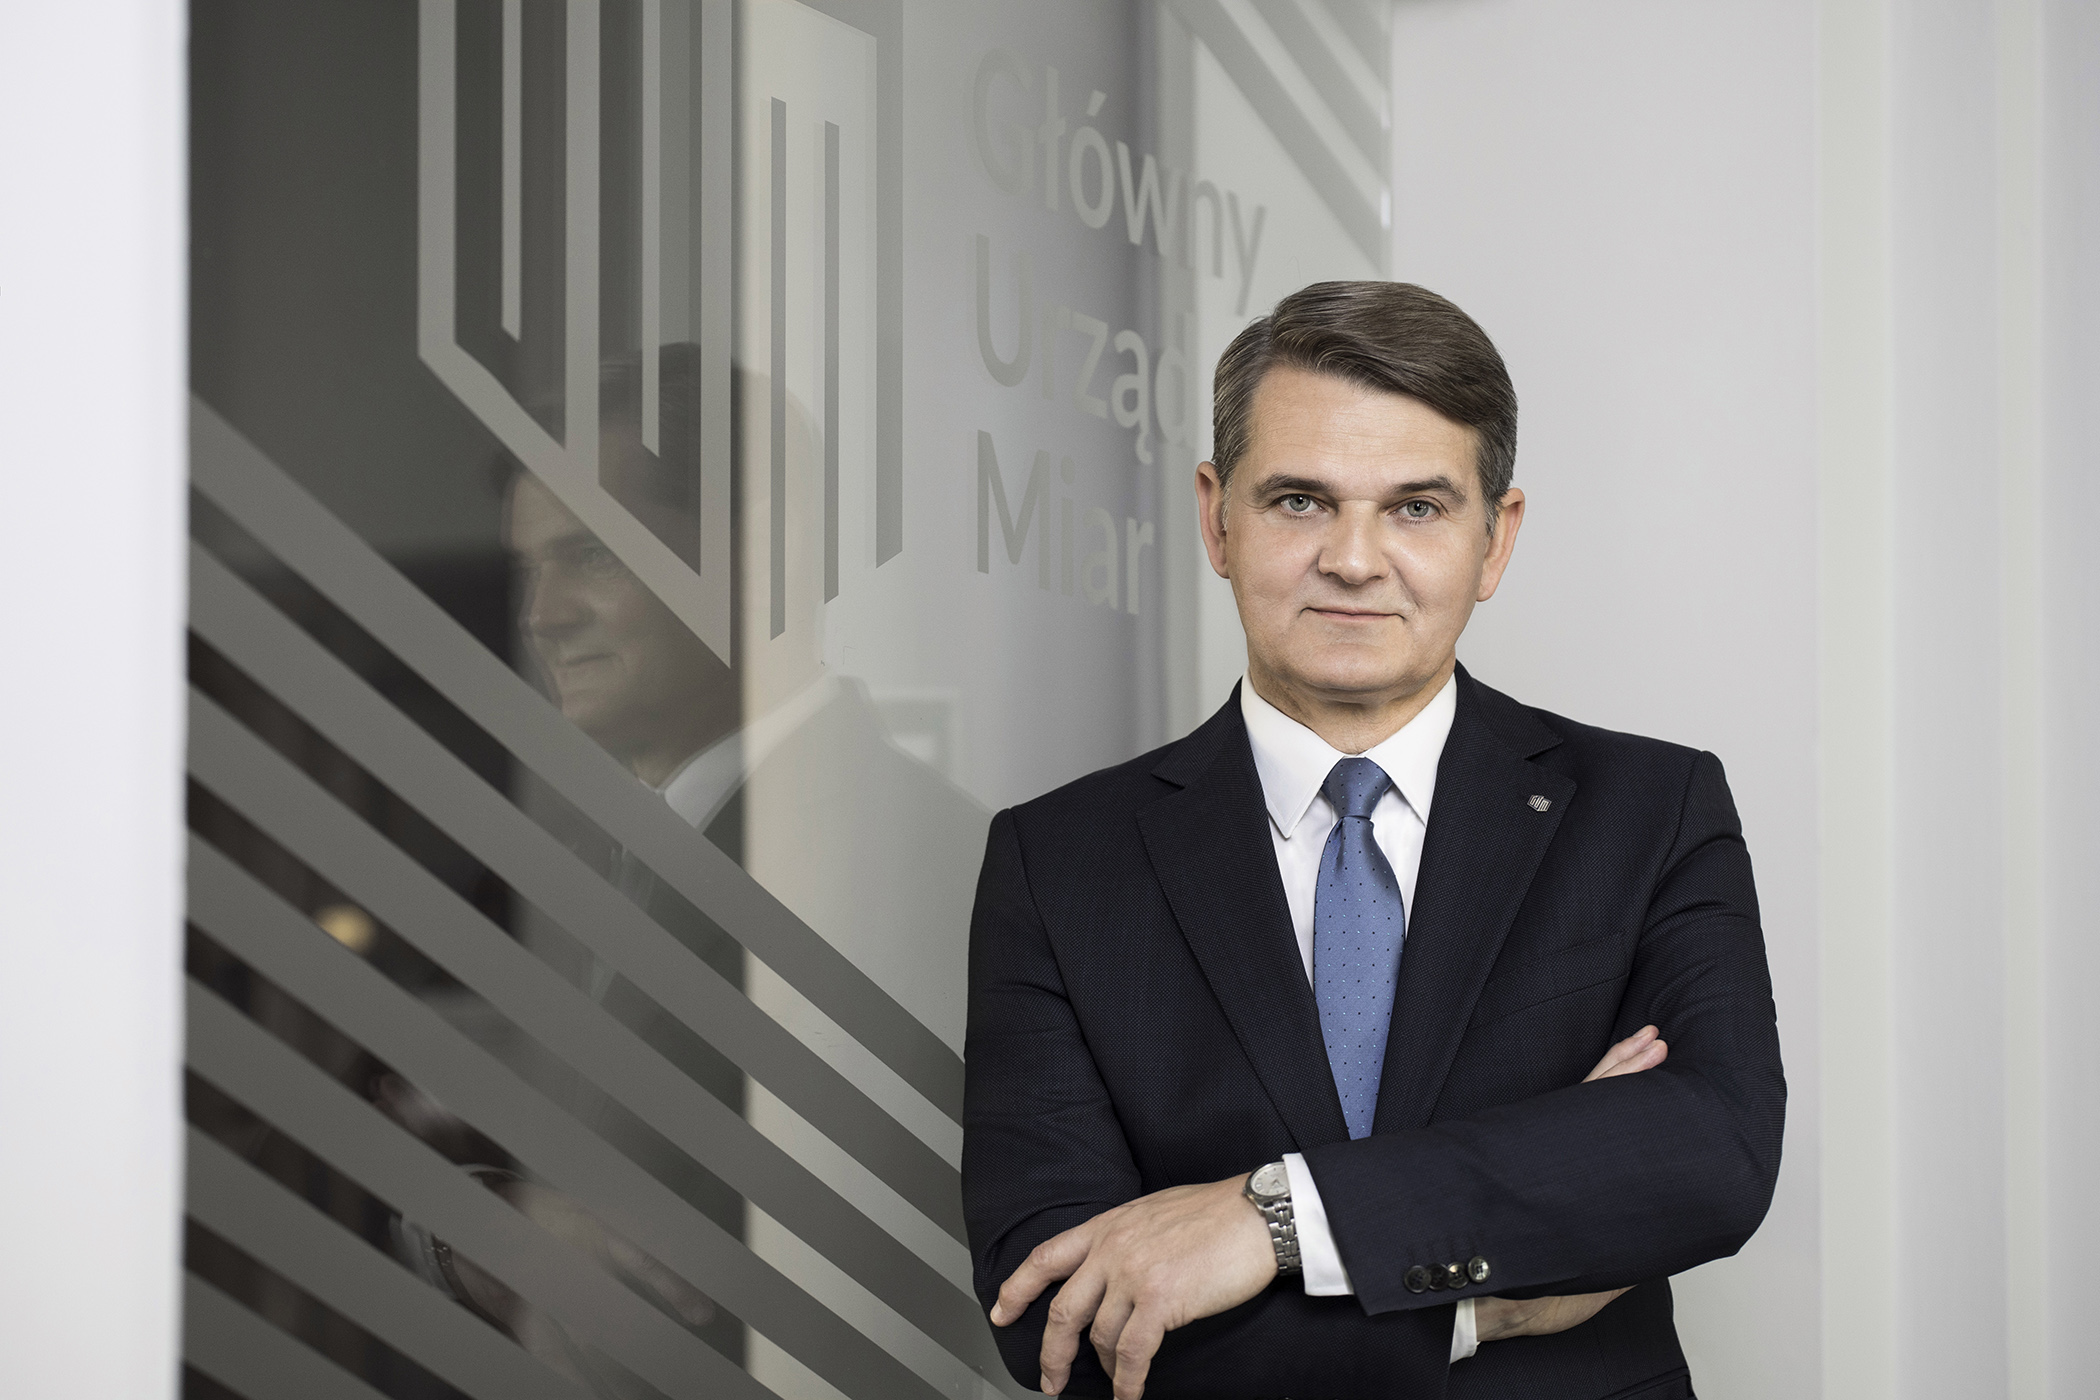 Prezes Głównego Urzędu Miar - prof. Jacek Semaniak. Na zdjęciu widoczna sylwetka mężczyzny w wieku średnim, w czarnym garniturze, białej koszuli i w niebieskim krawacie.